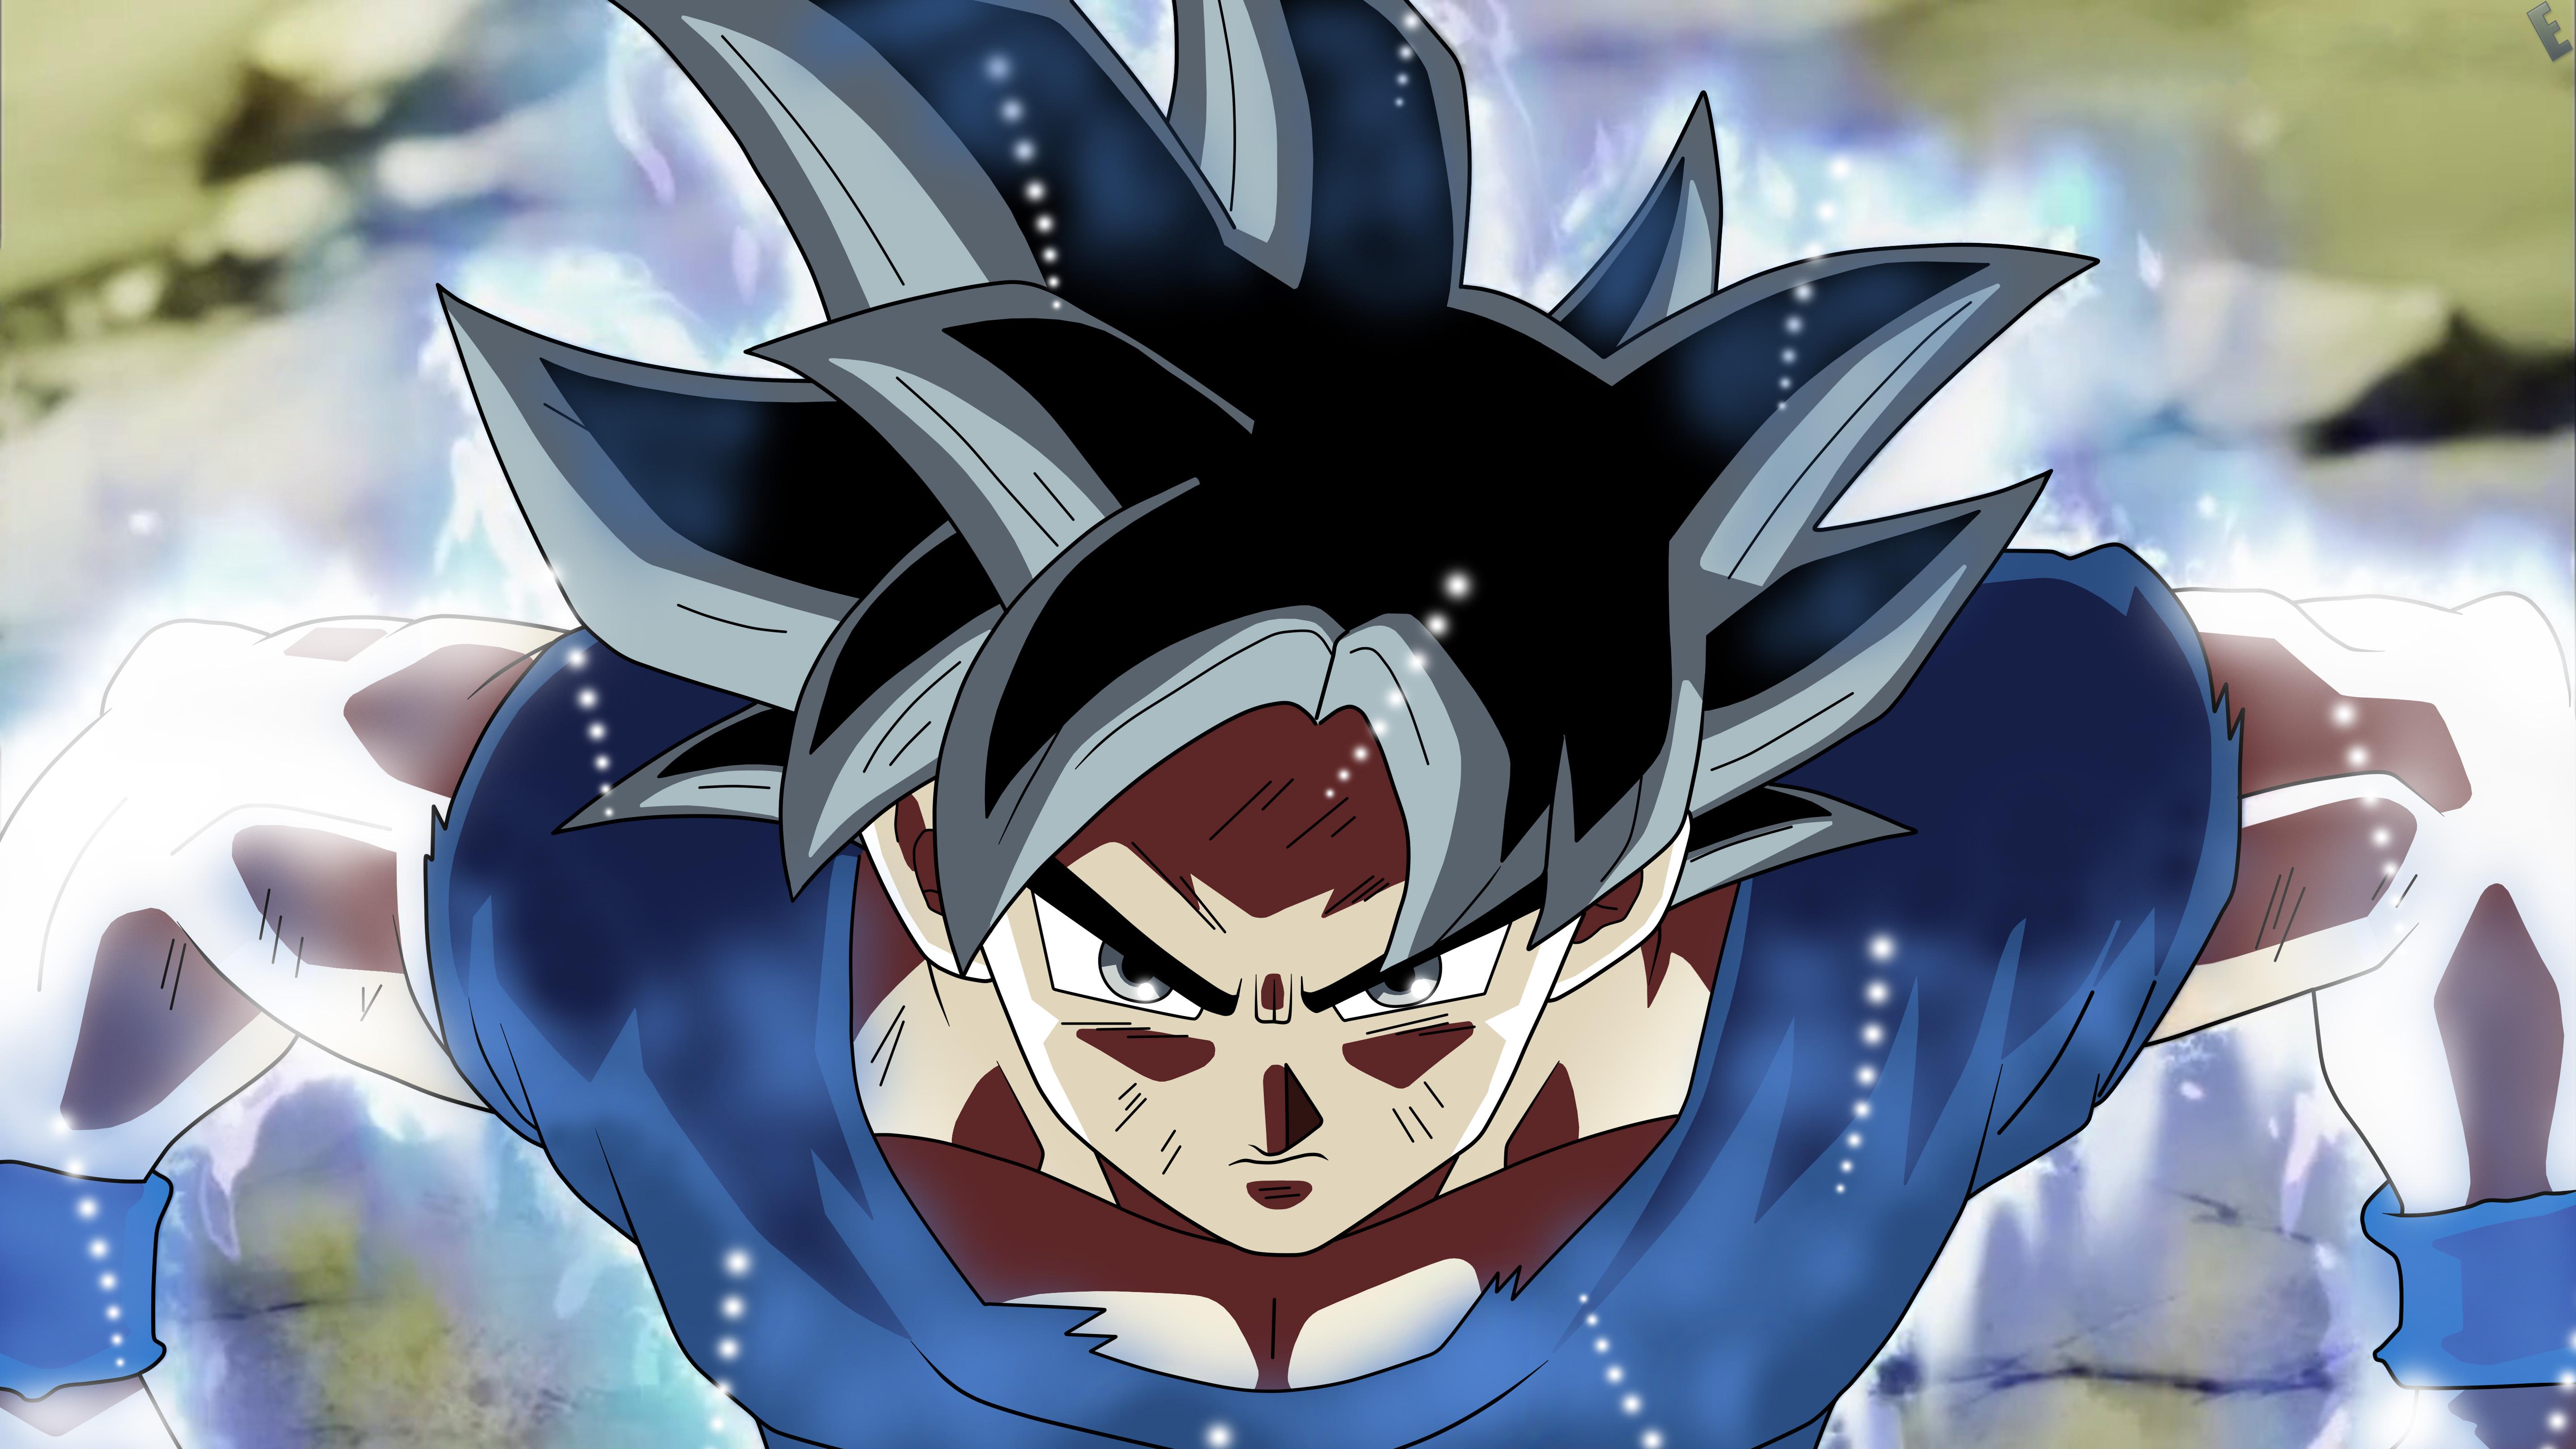 5760 x 3240 · jpeg - Goku Dragon Ball Super Anime 5k, HD Anime, 4k Wallpapers, Images ...